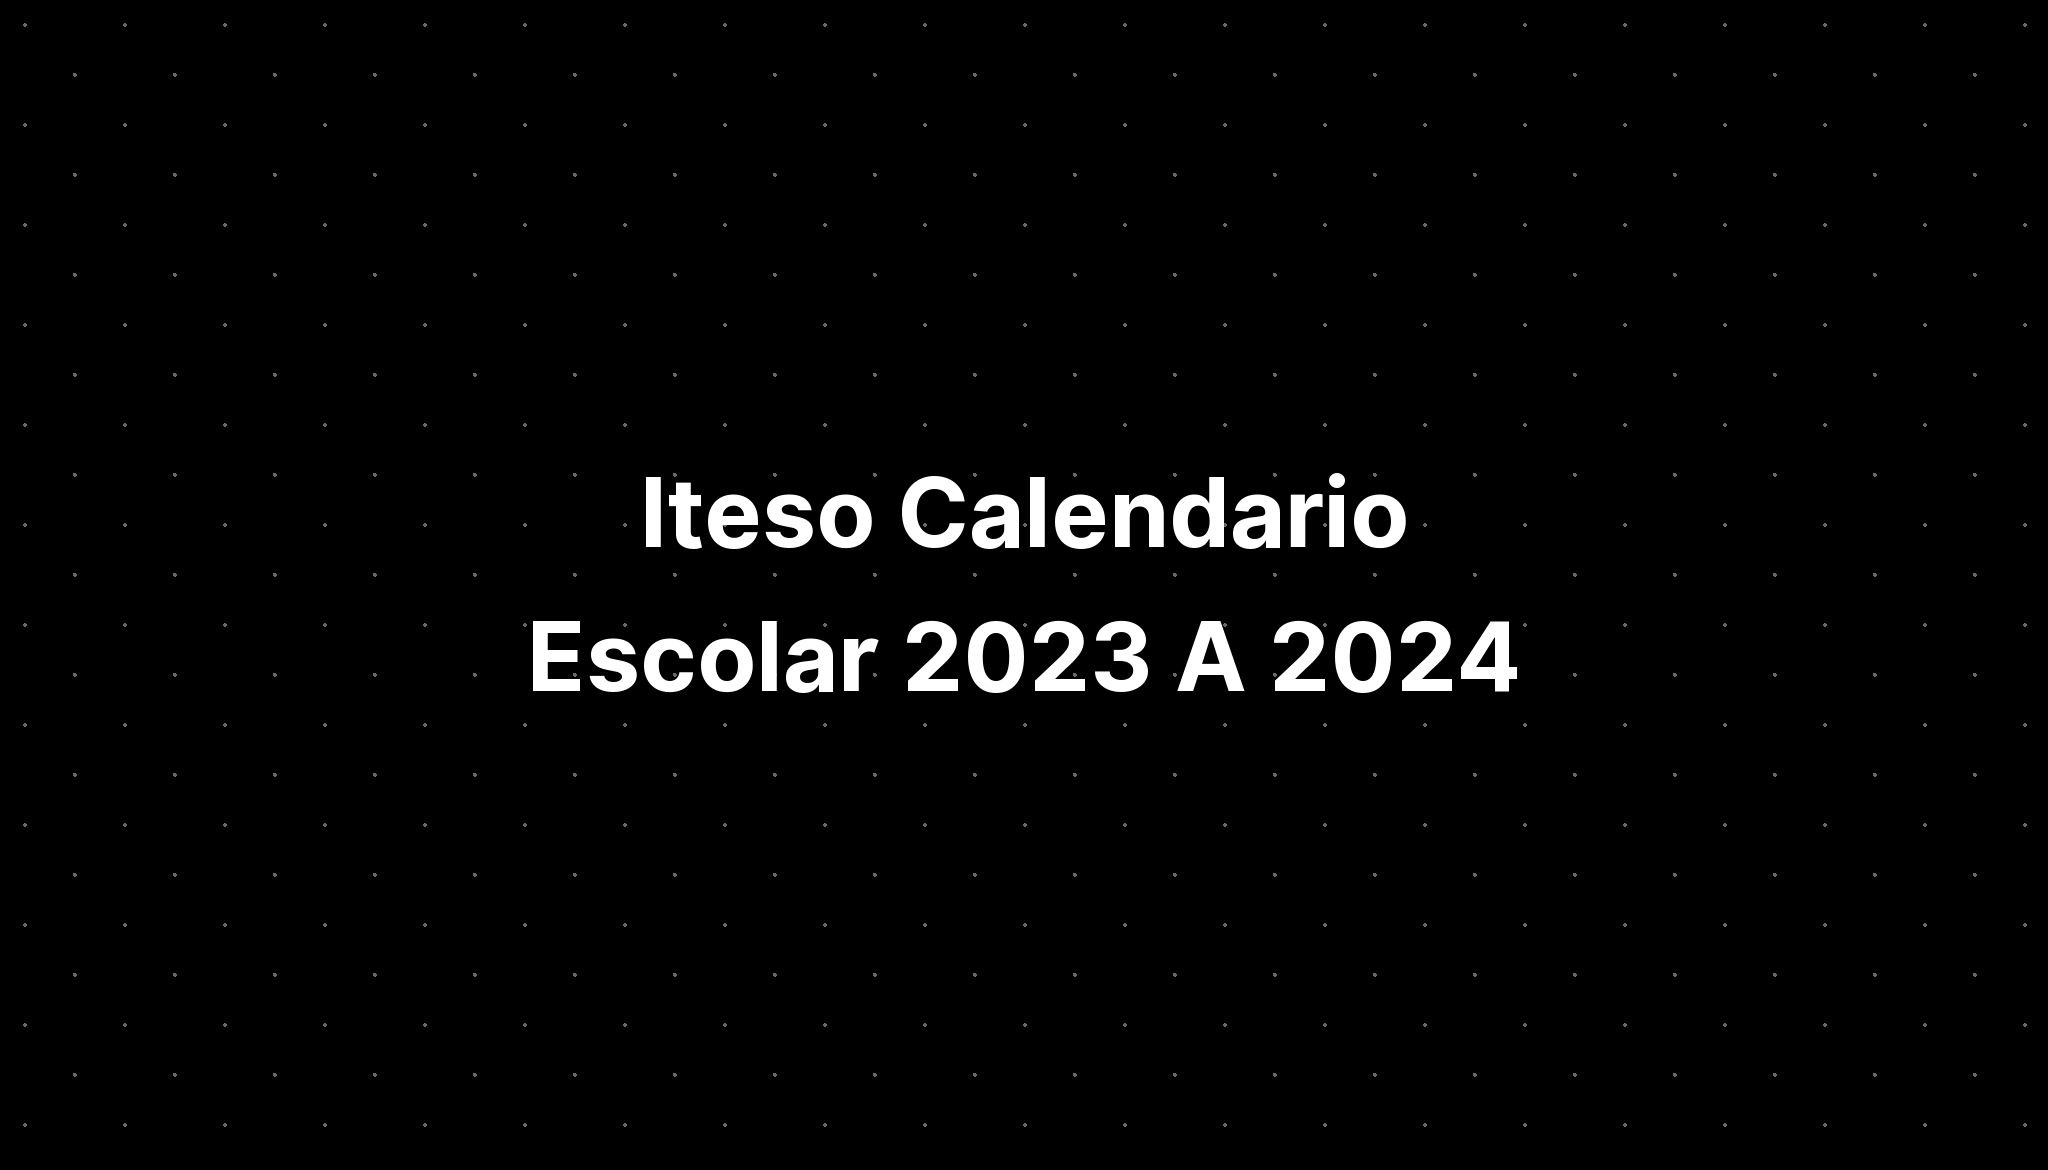 Iteso Calendario Escolar 2023 A 2024 IMAGESEE